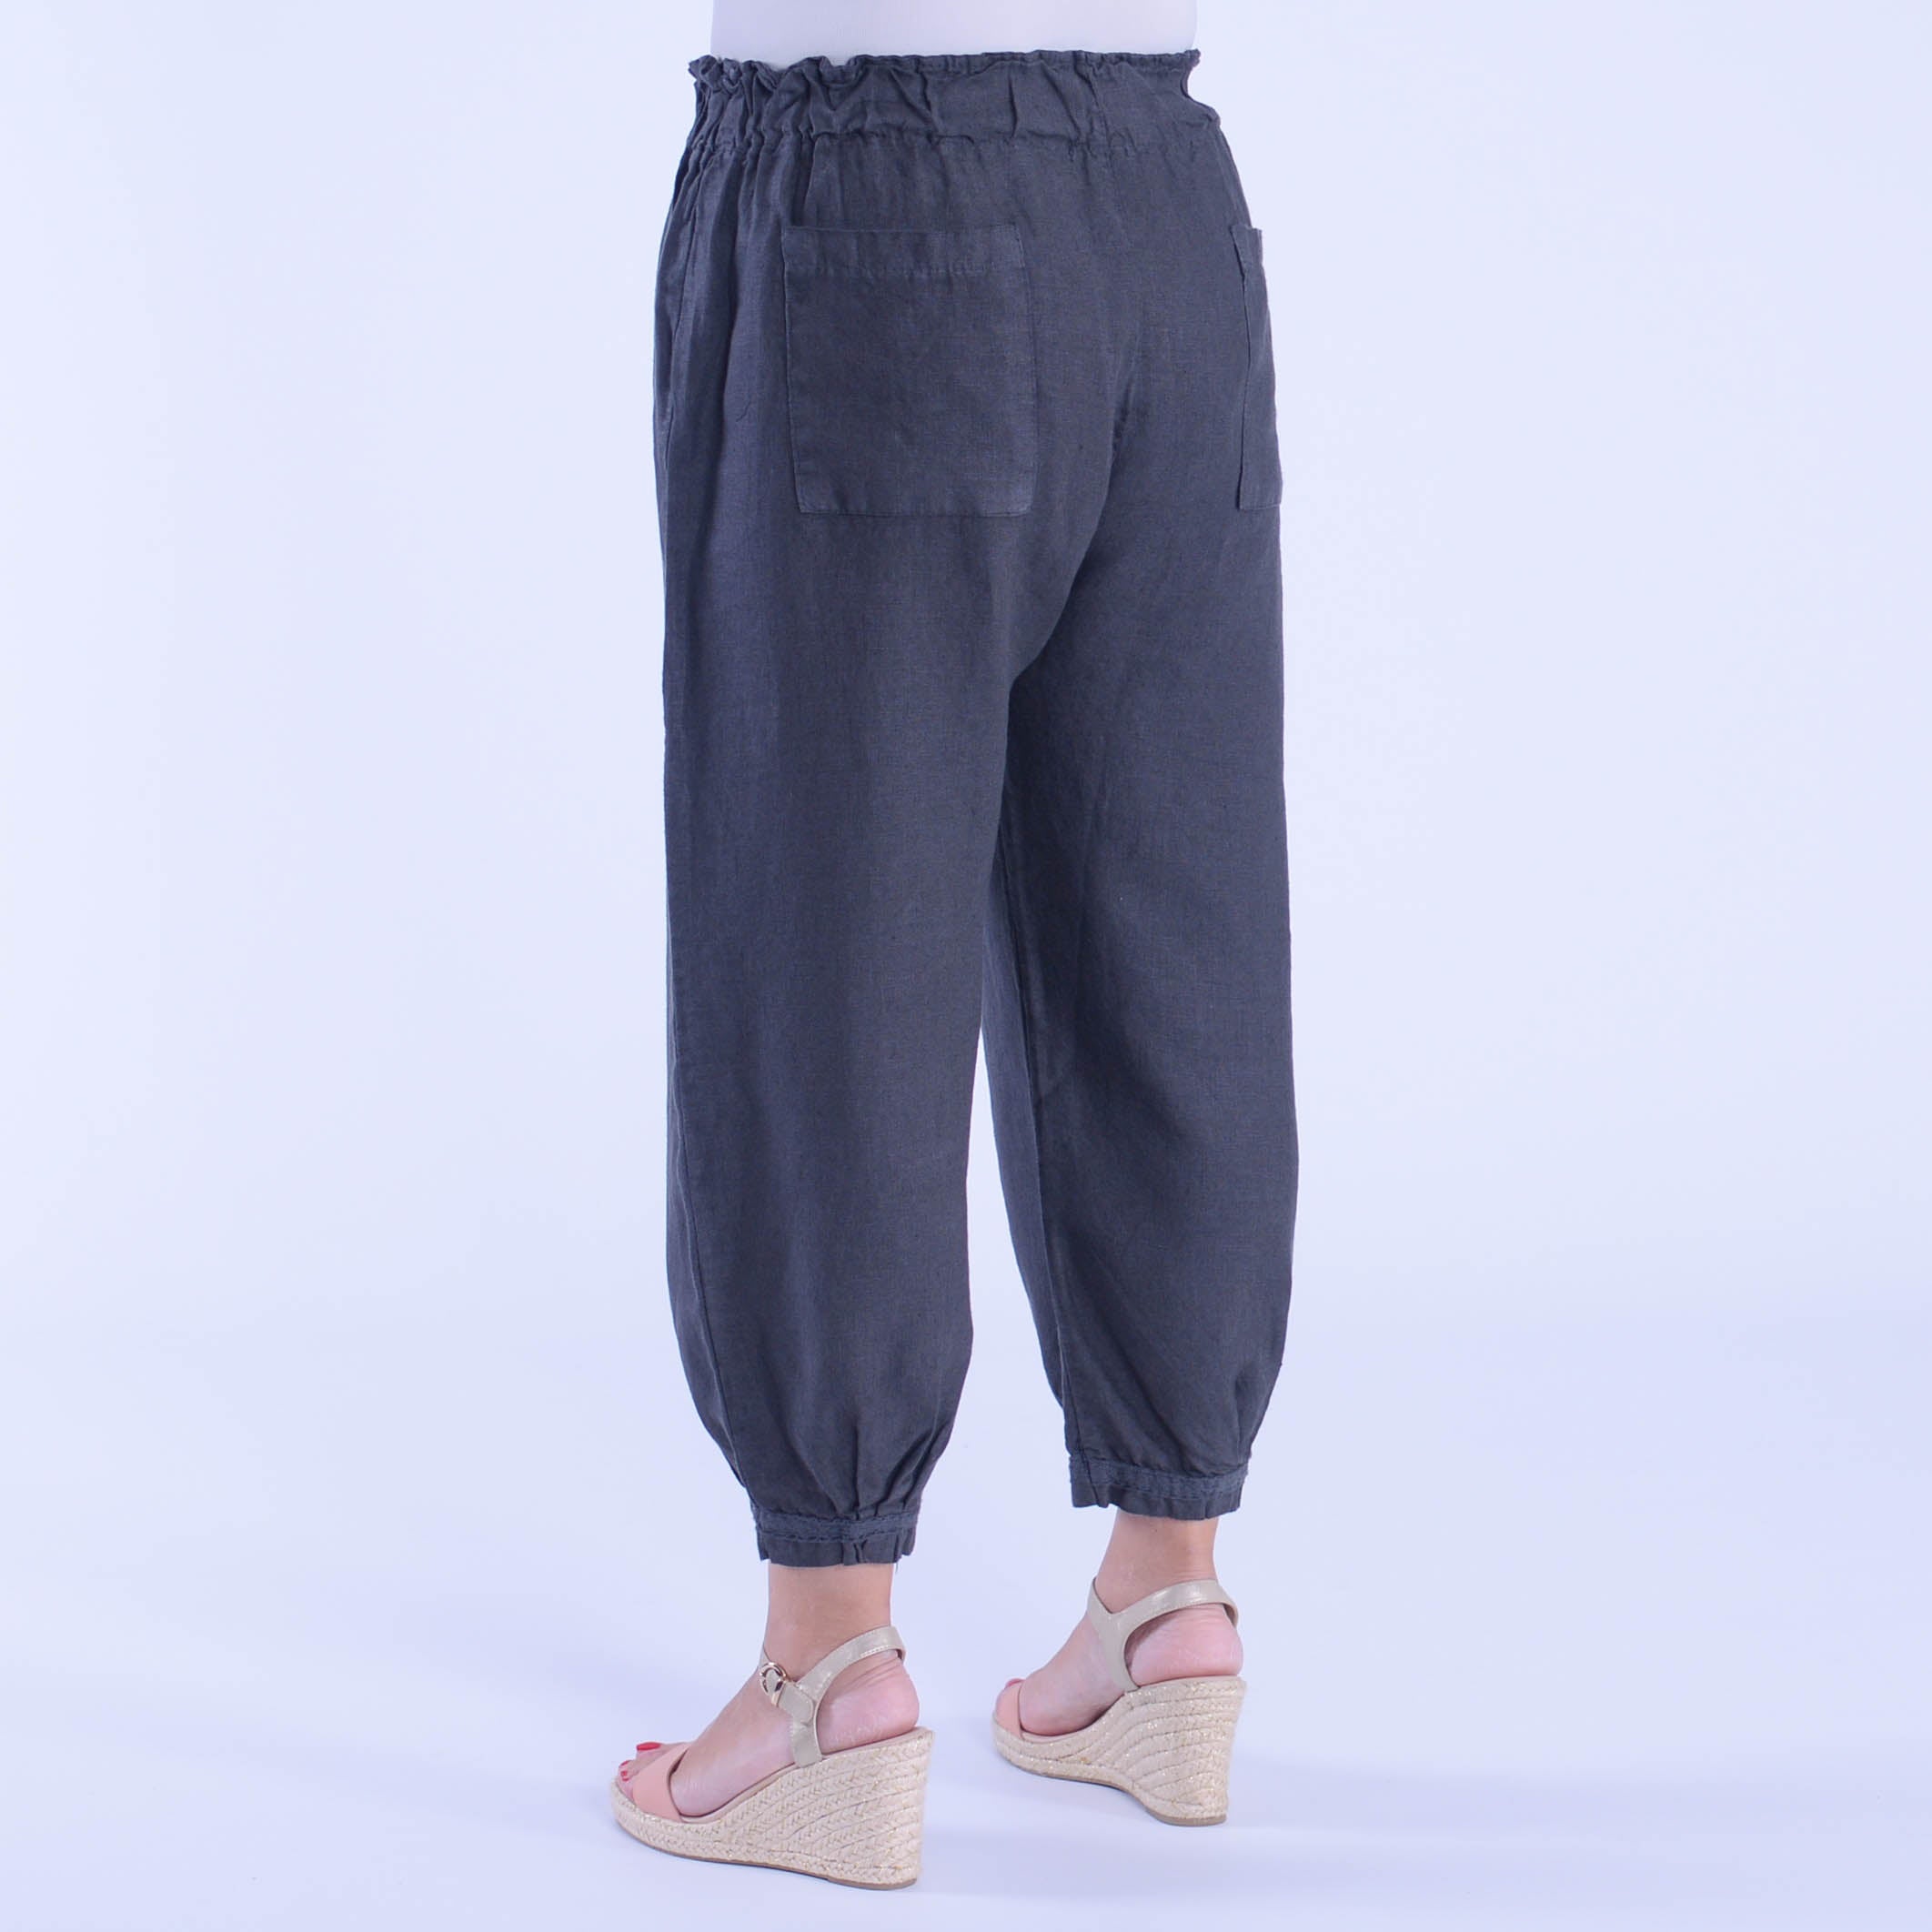 Lace Trim Linen Trousers - 9466